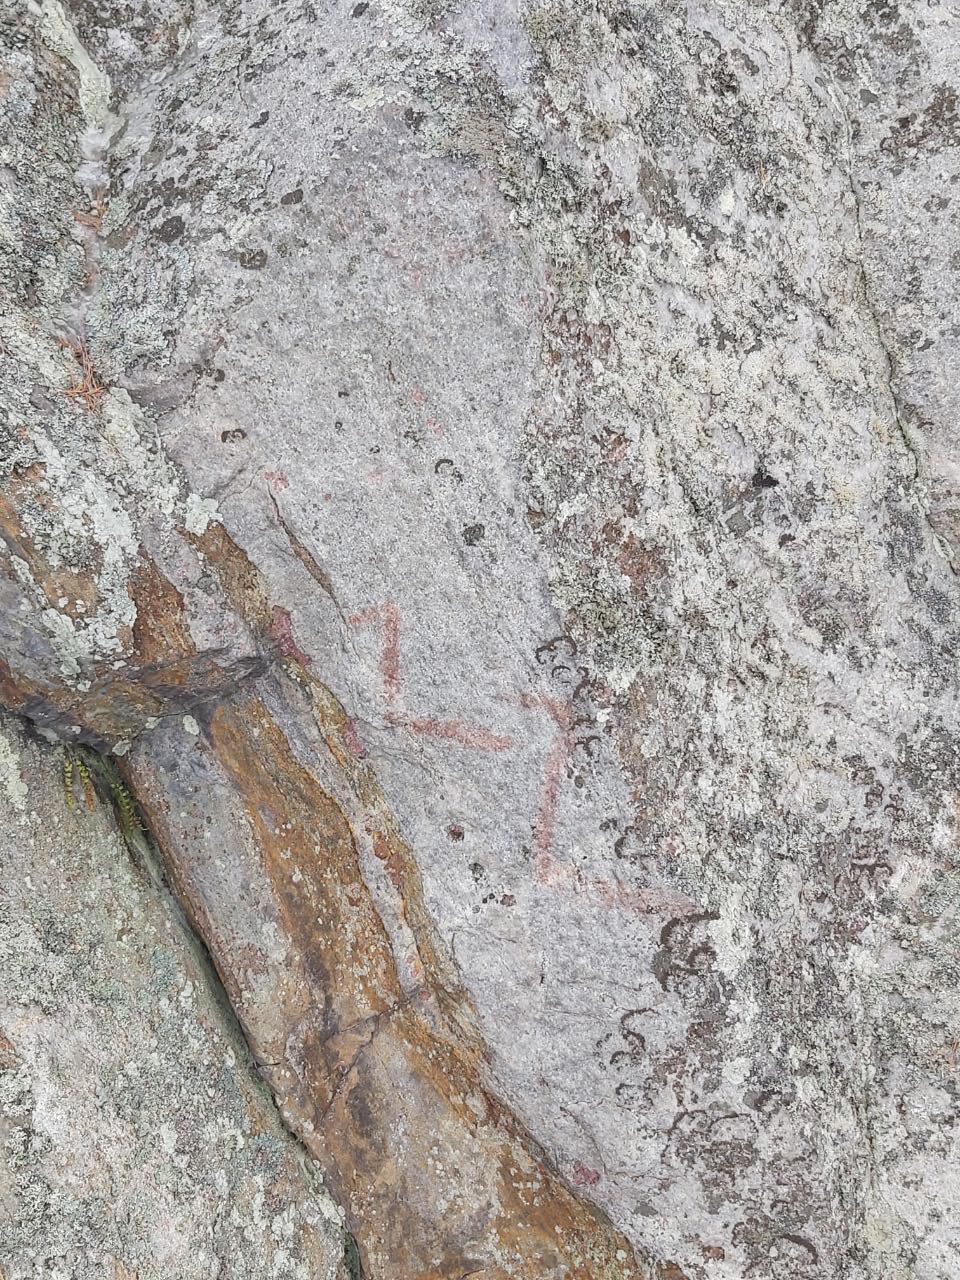 Rapakko Saunalahdenniemen siirtolohkareeseen maalattu kalliomaalaus. Metsähallitus. CC BY 4.0 Tanja Tenhunen 11.3.2022